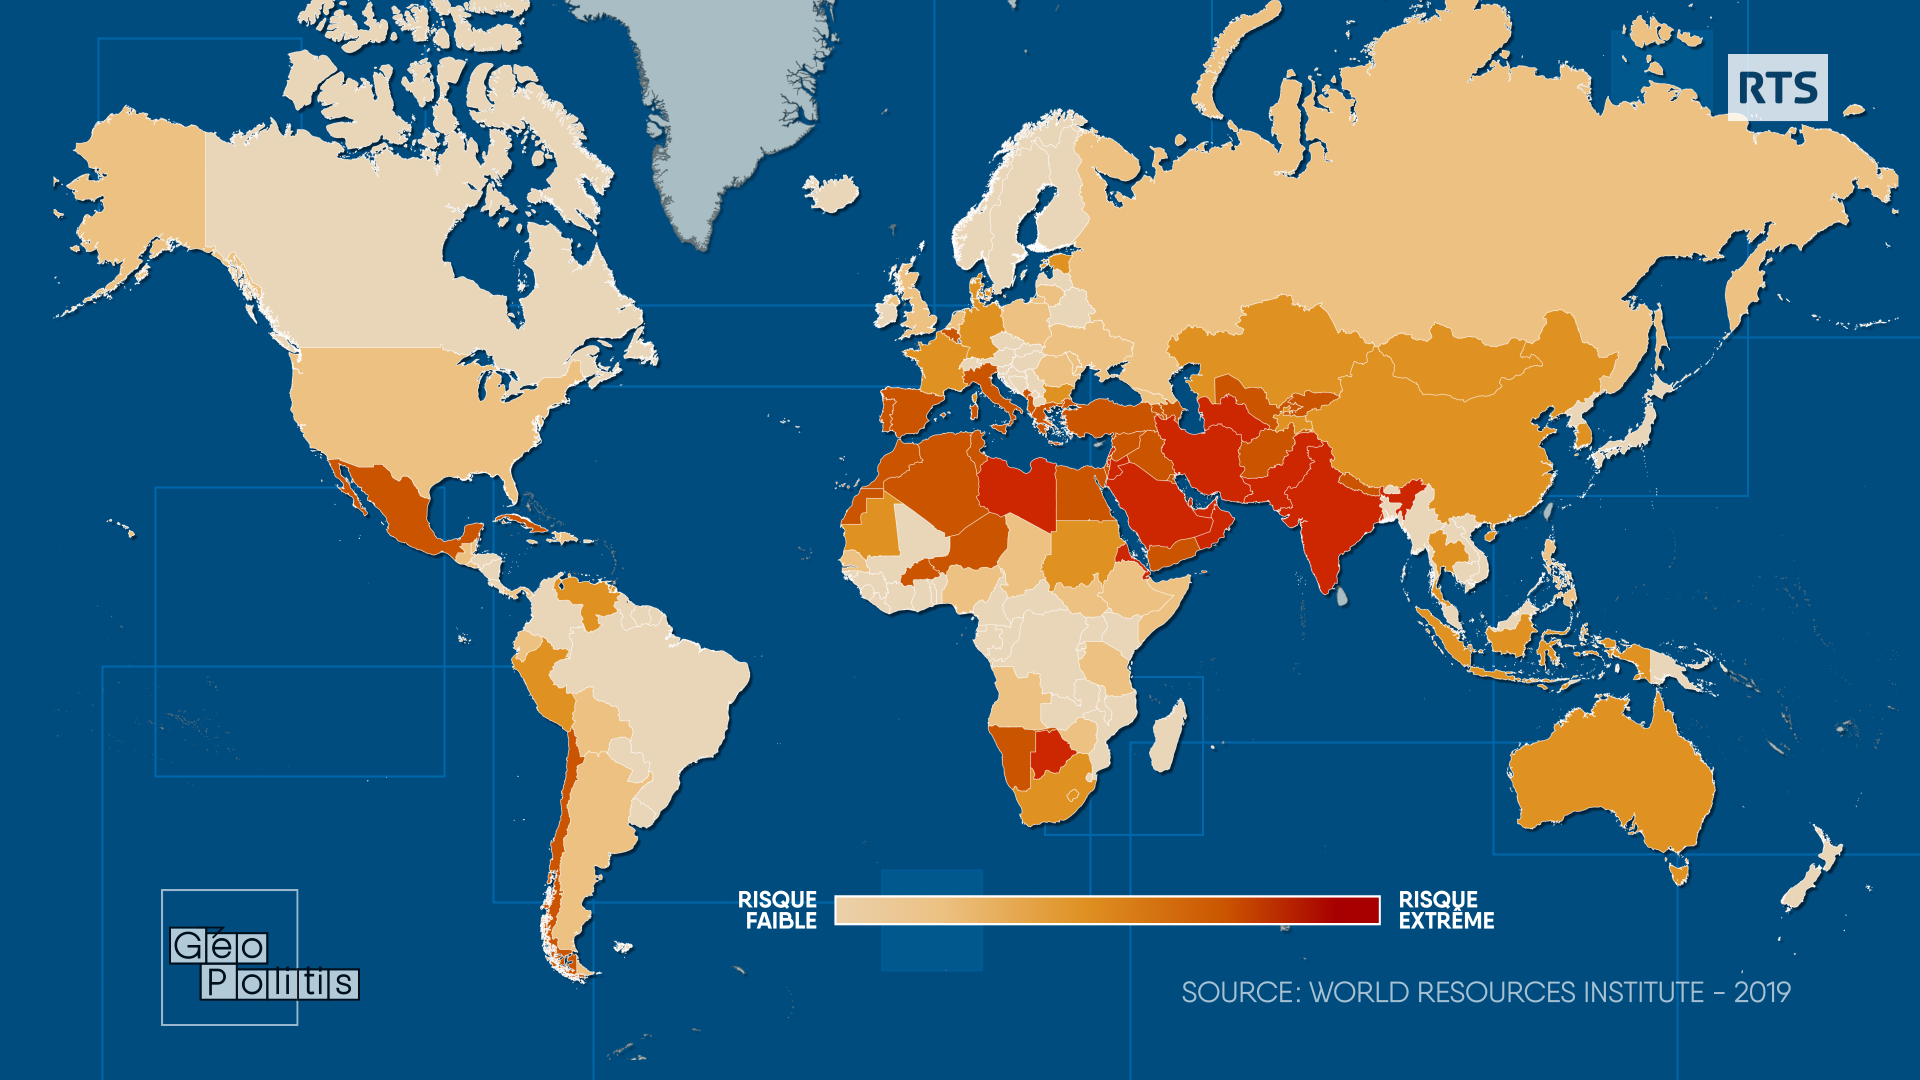 Risque de pénurie d'eau "extrêmement élevé" dans 17 pays. [RTS - Géopolitis]